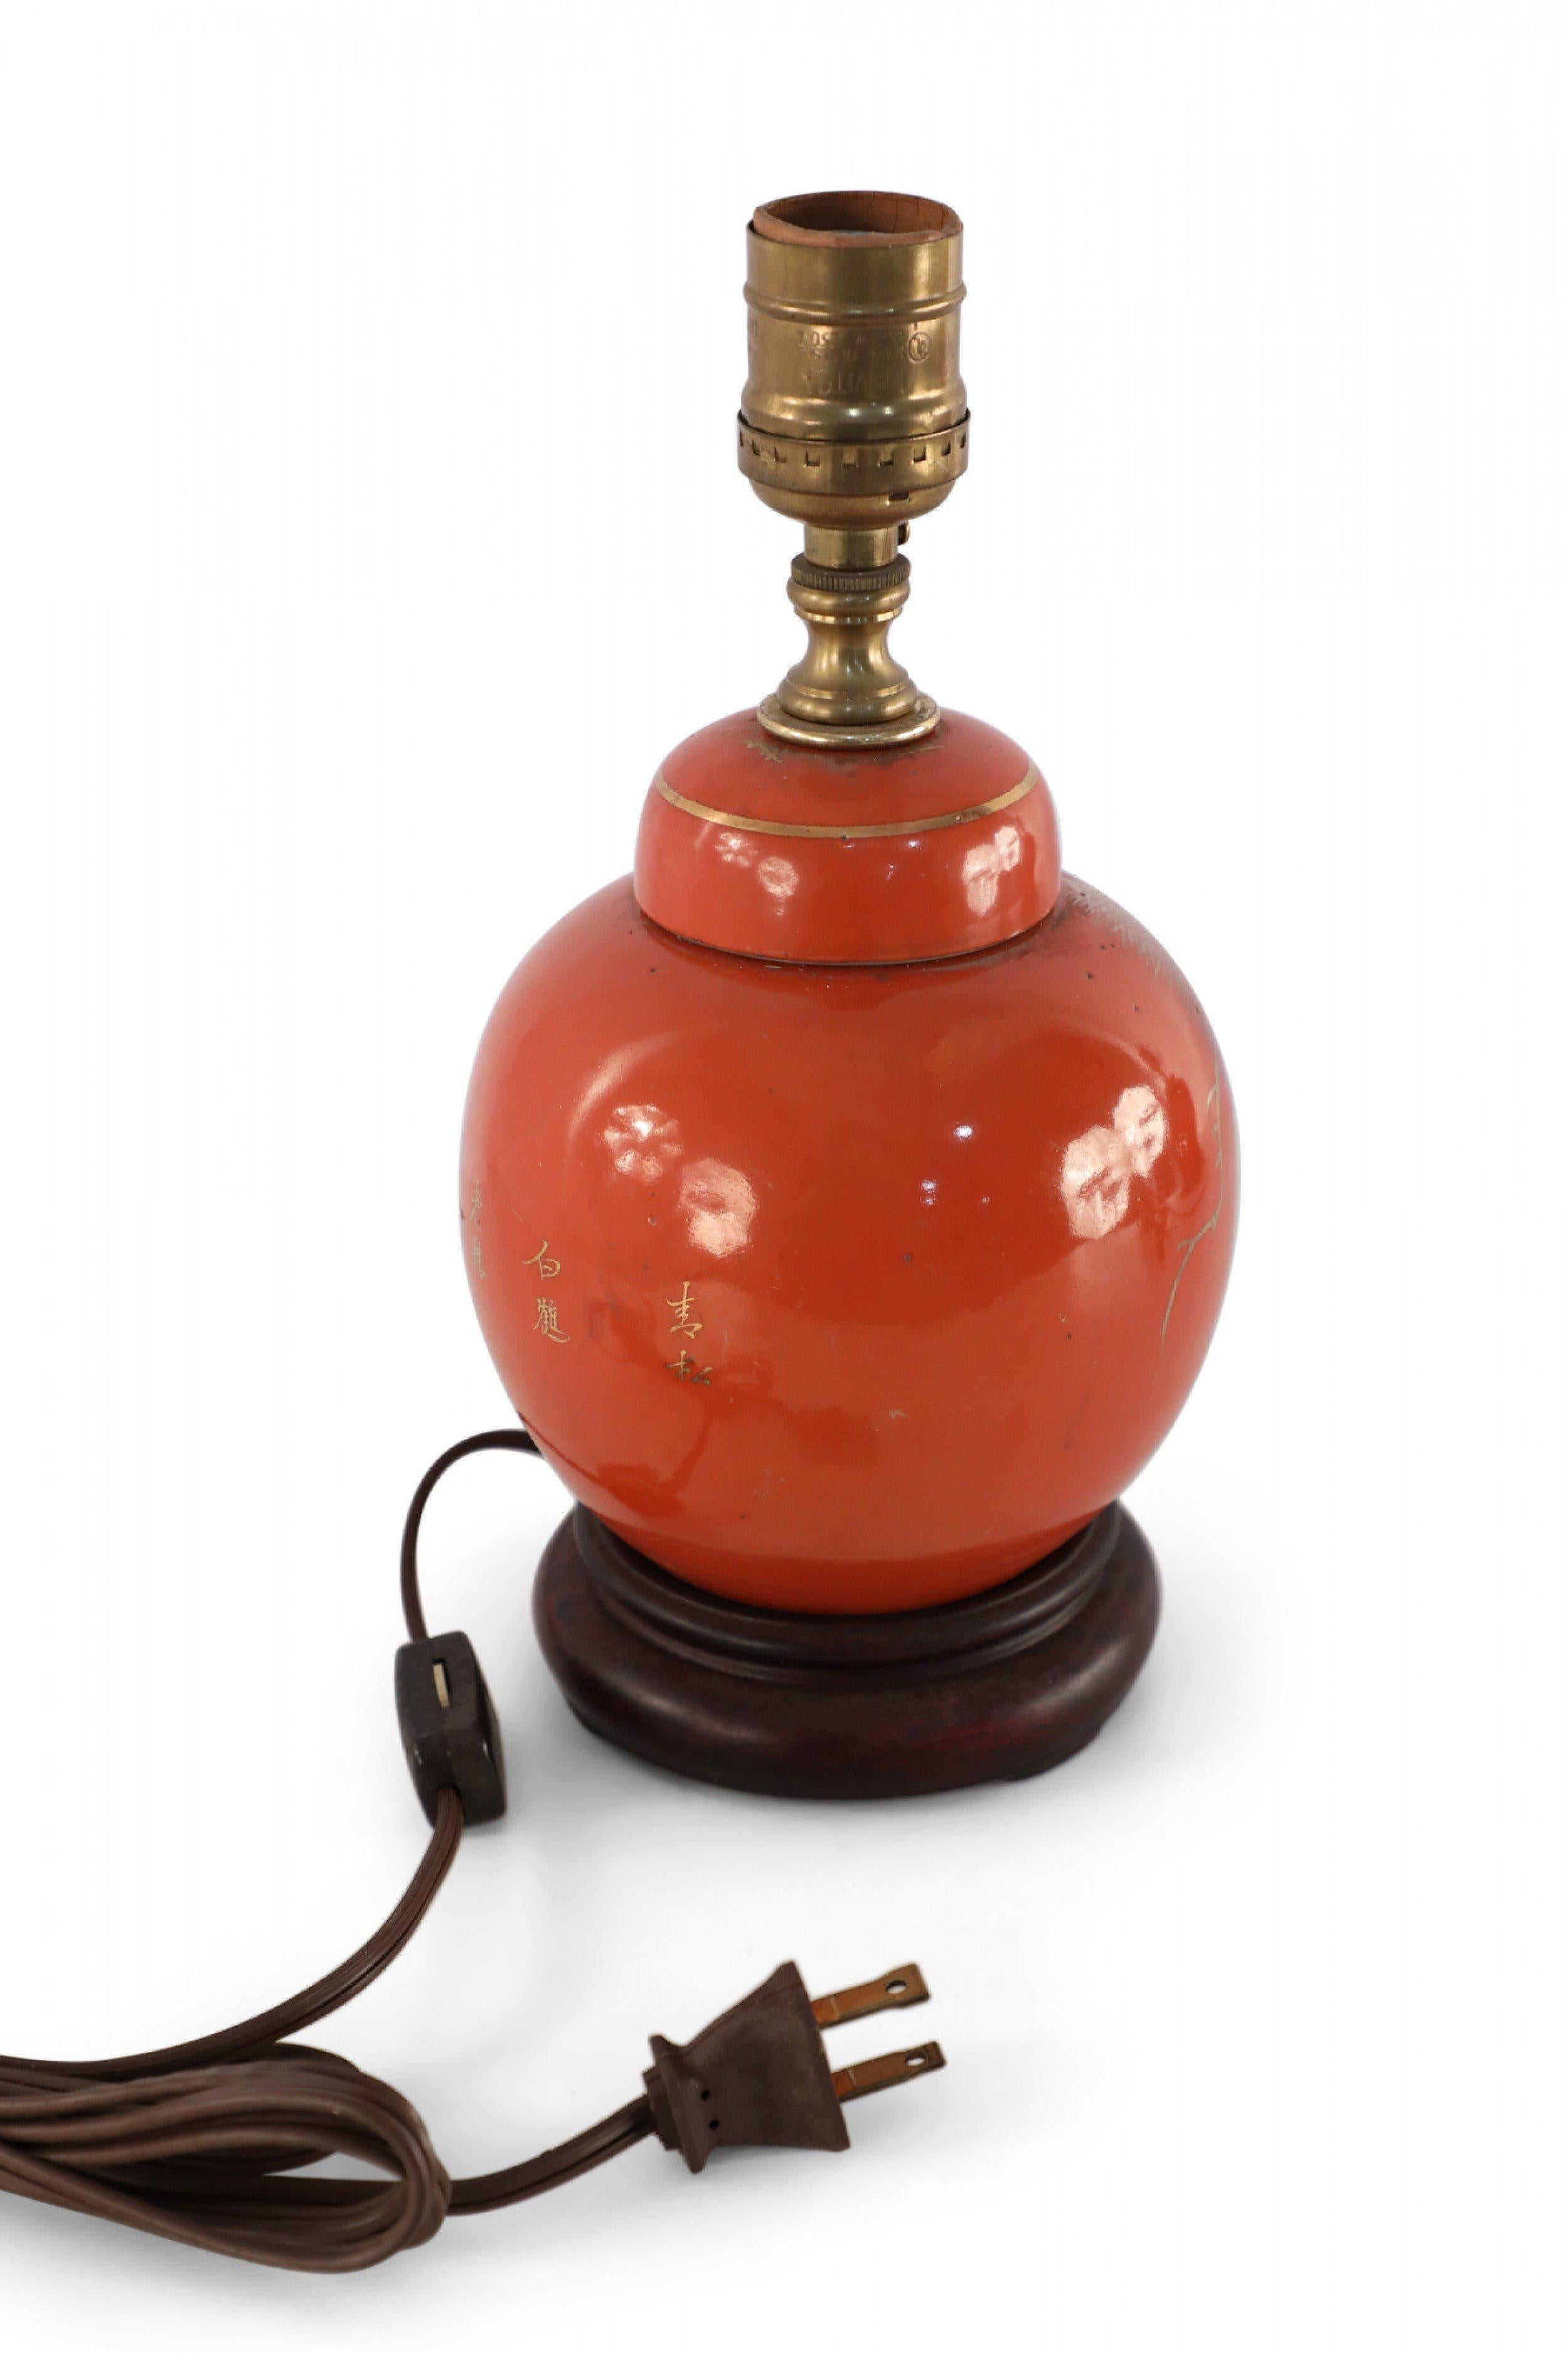 Lampe de table ancienne chinoise (début du 20e siècle) composée d'un vase rond en porcelaine orange lustrée, à couvercle décoré d'un motif de grue en or sur une face et de caractères sur l'autre, monté sur une base en bois et équipé de ferrures en